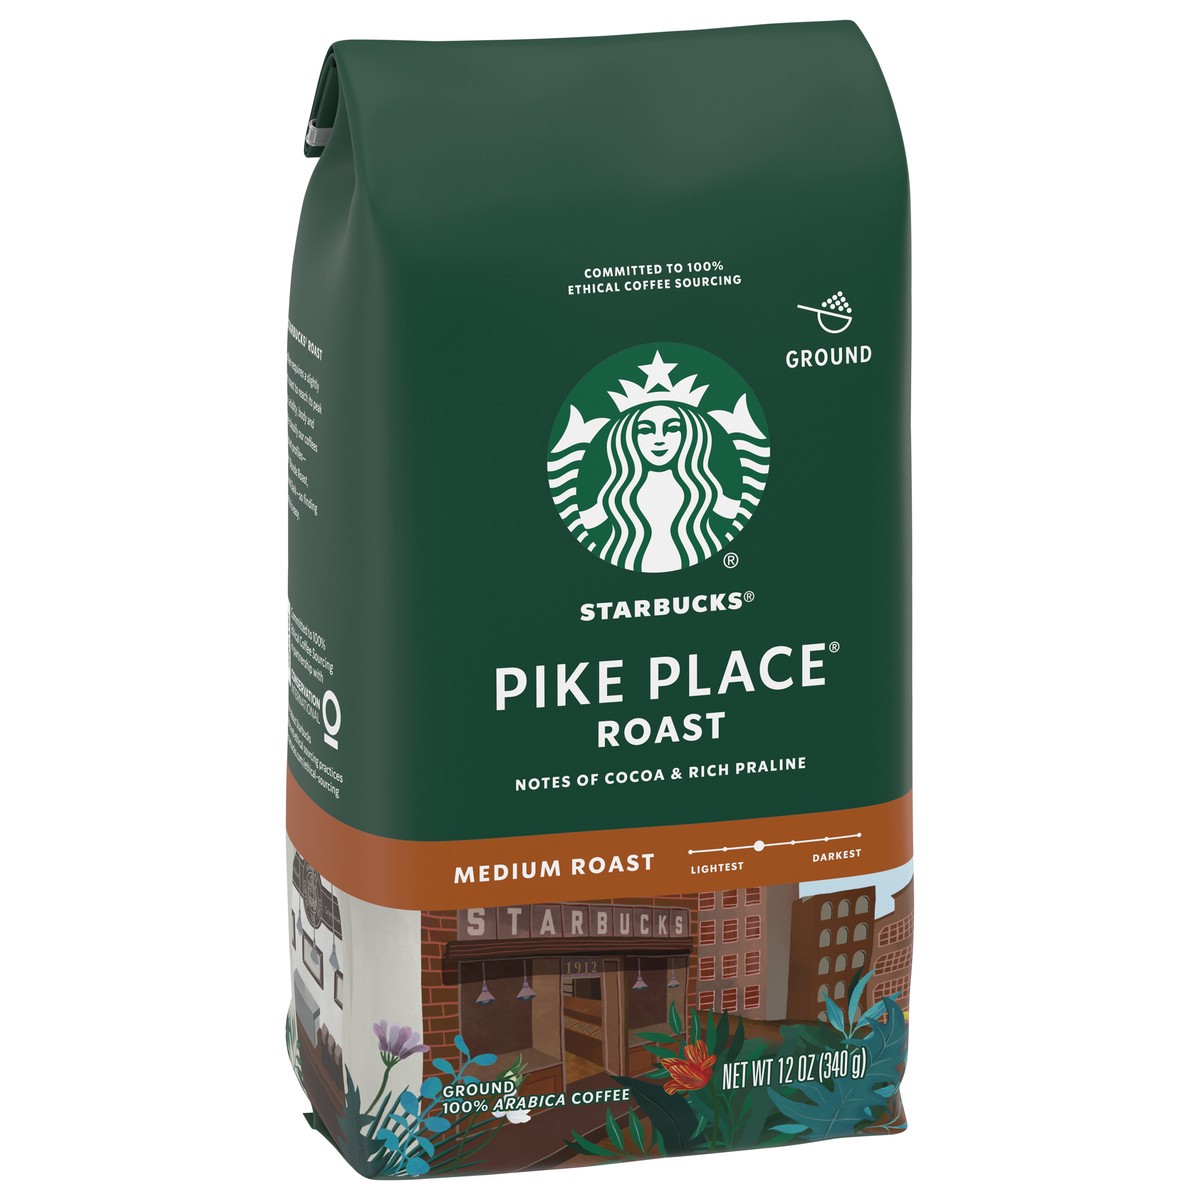 slide 2 of 9, Starbucks Ground Coffee, Medium Roast Coffee, Pike Place Roast, 100% Arabica, 1 Bag - 12 oz, 12 oz